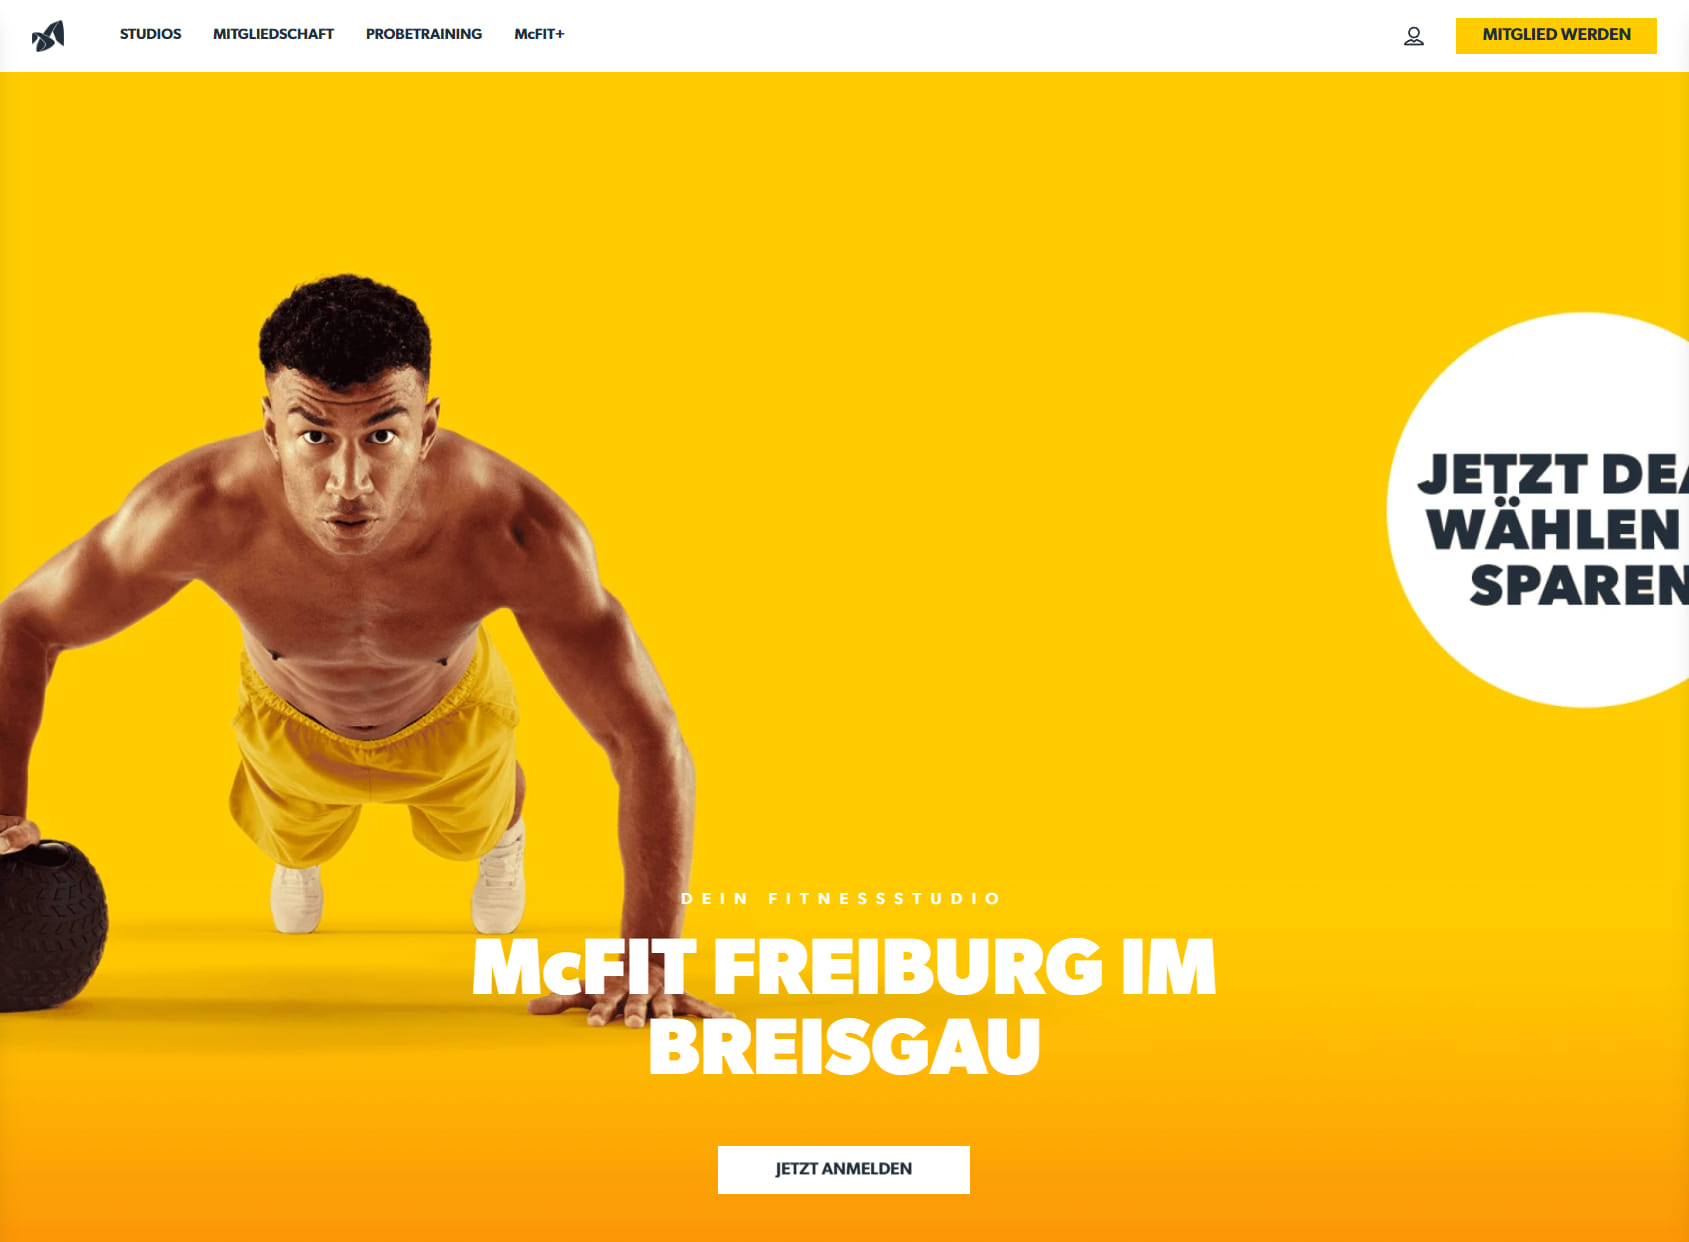 McFIT Fitnessstudio Freiburg im Breisgau